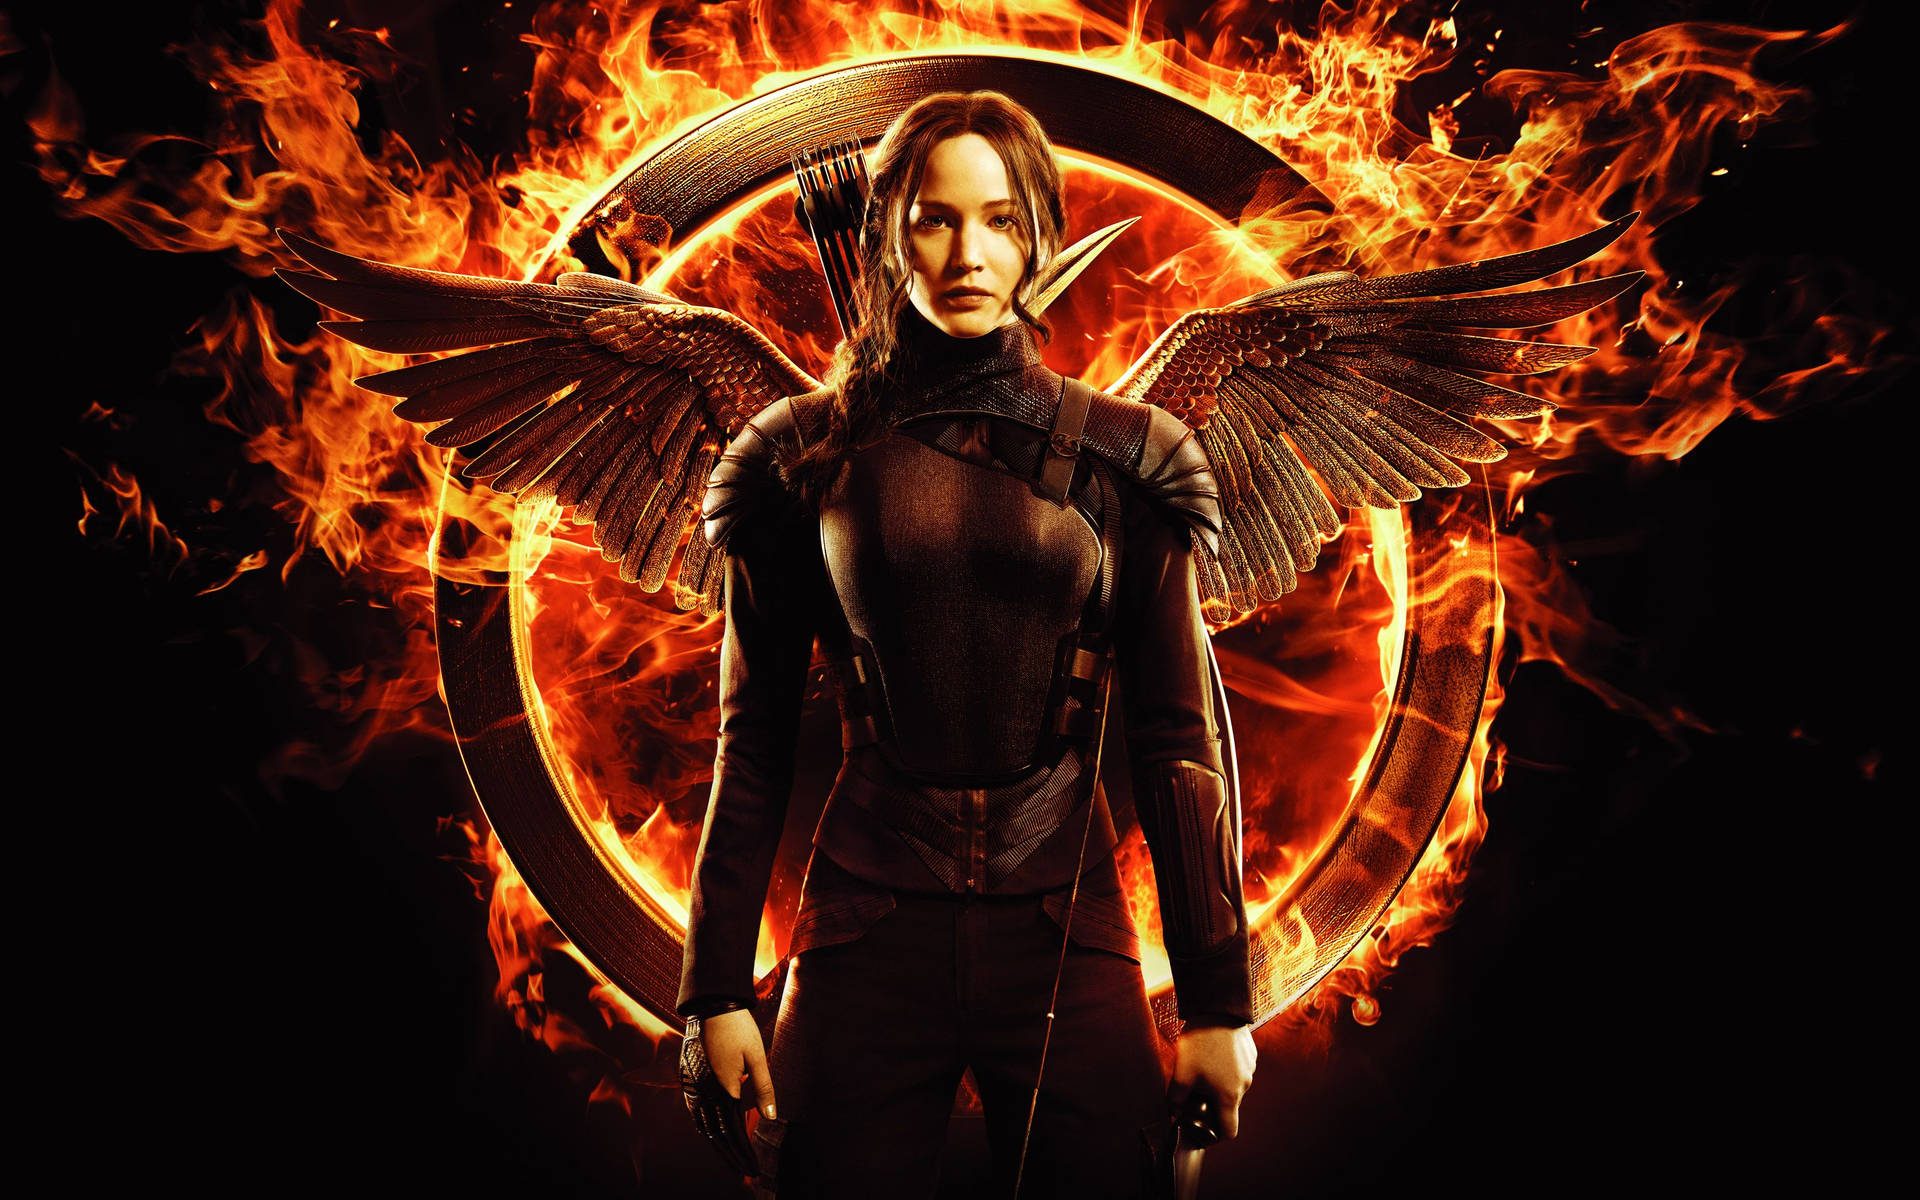 Katniss Everdeen The Hunger Games